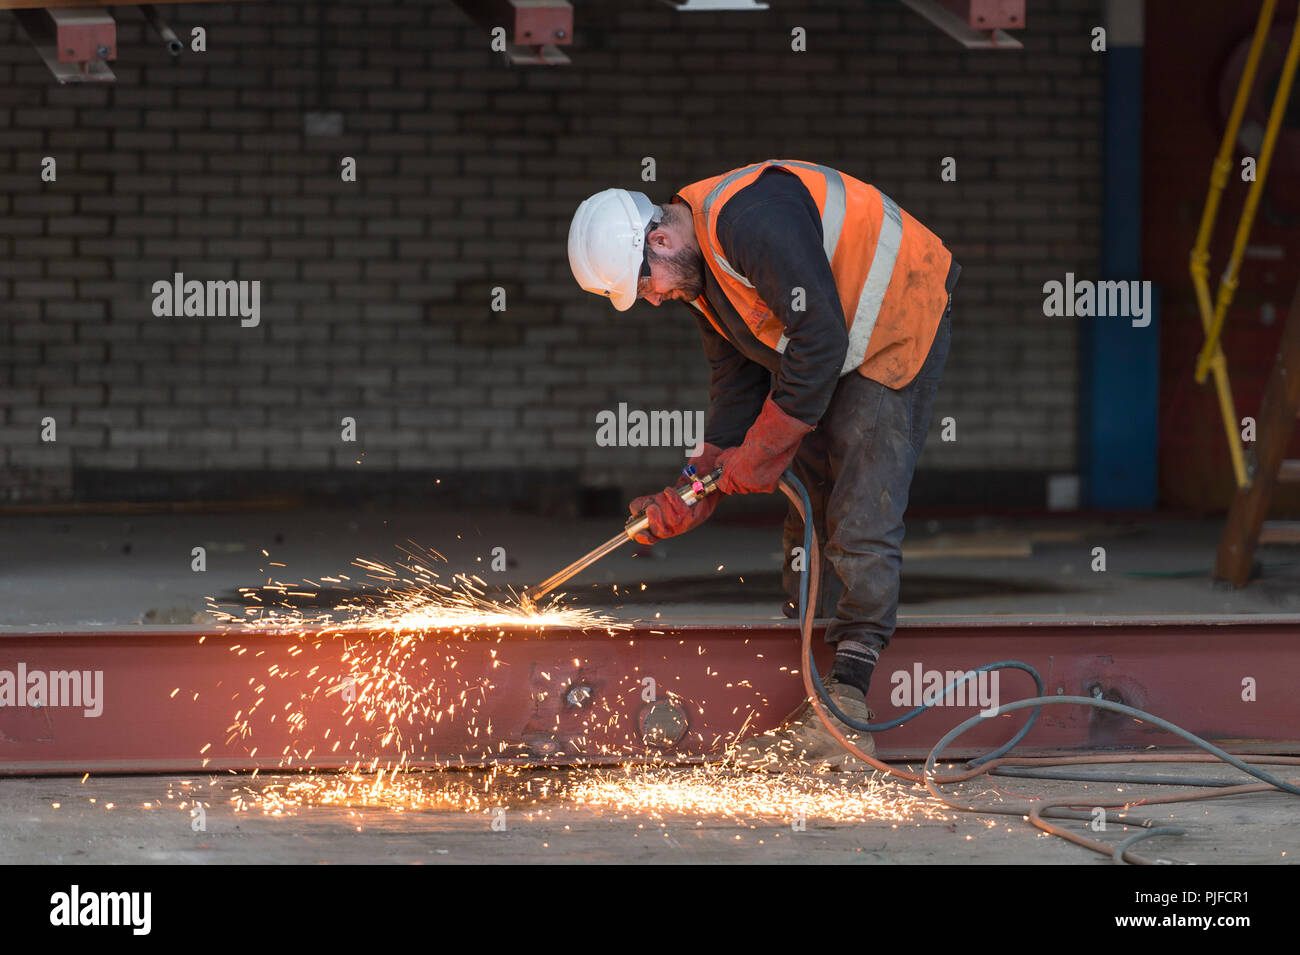 Baustelle Arbeiter schneiden einen Strahl mit einem Azetylen-fackel Stockfoto